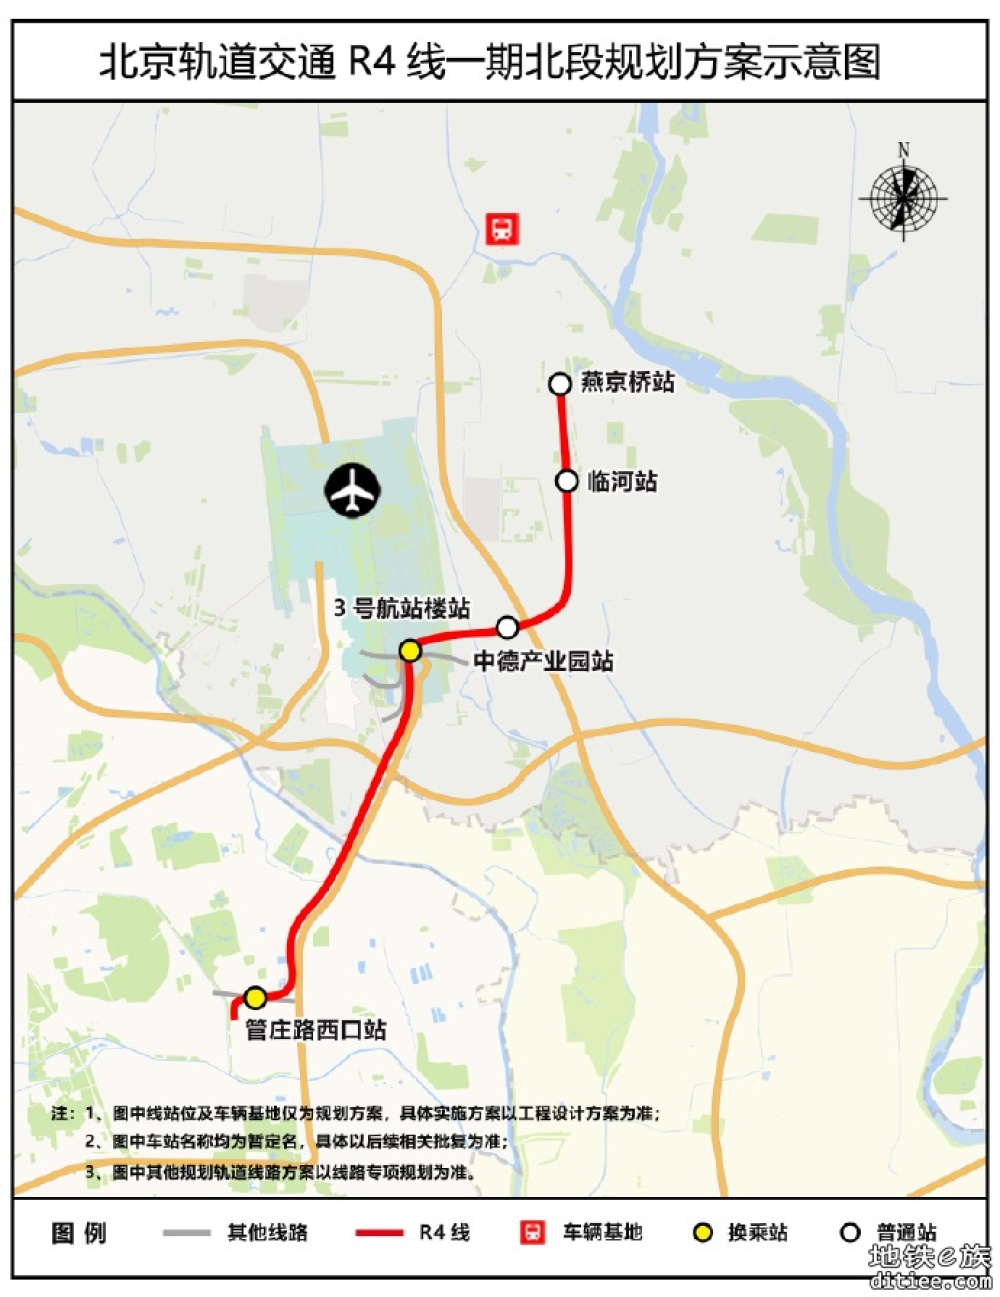 北京轨道交通R4线一期北段线路一体化规划方案公示